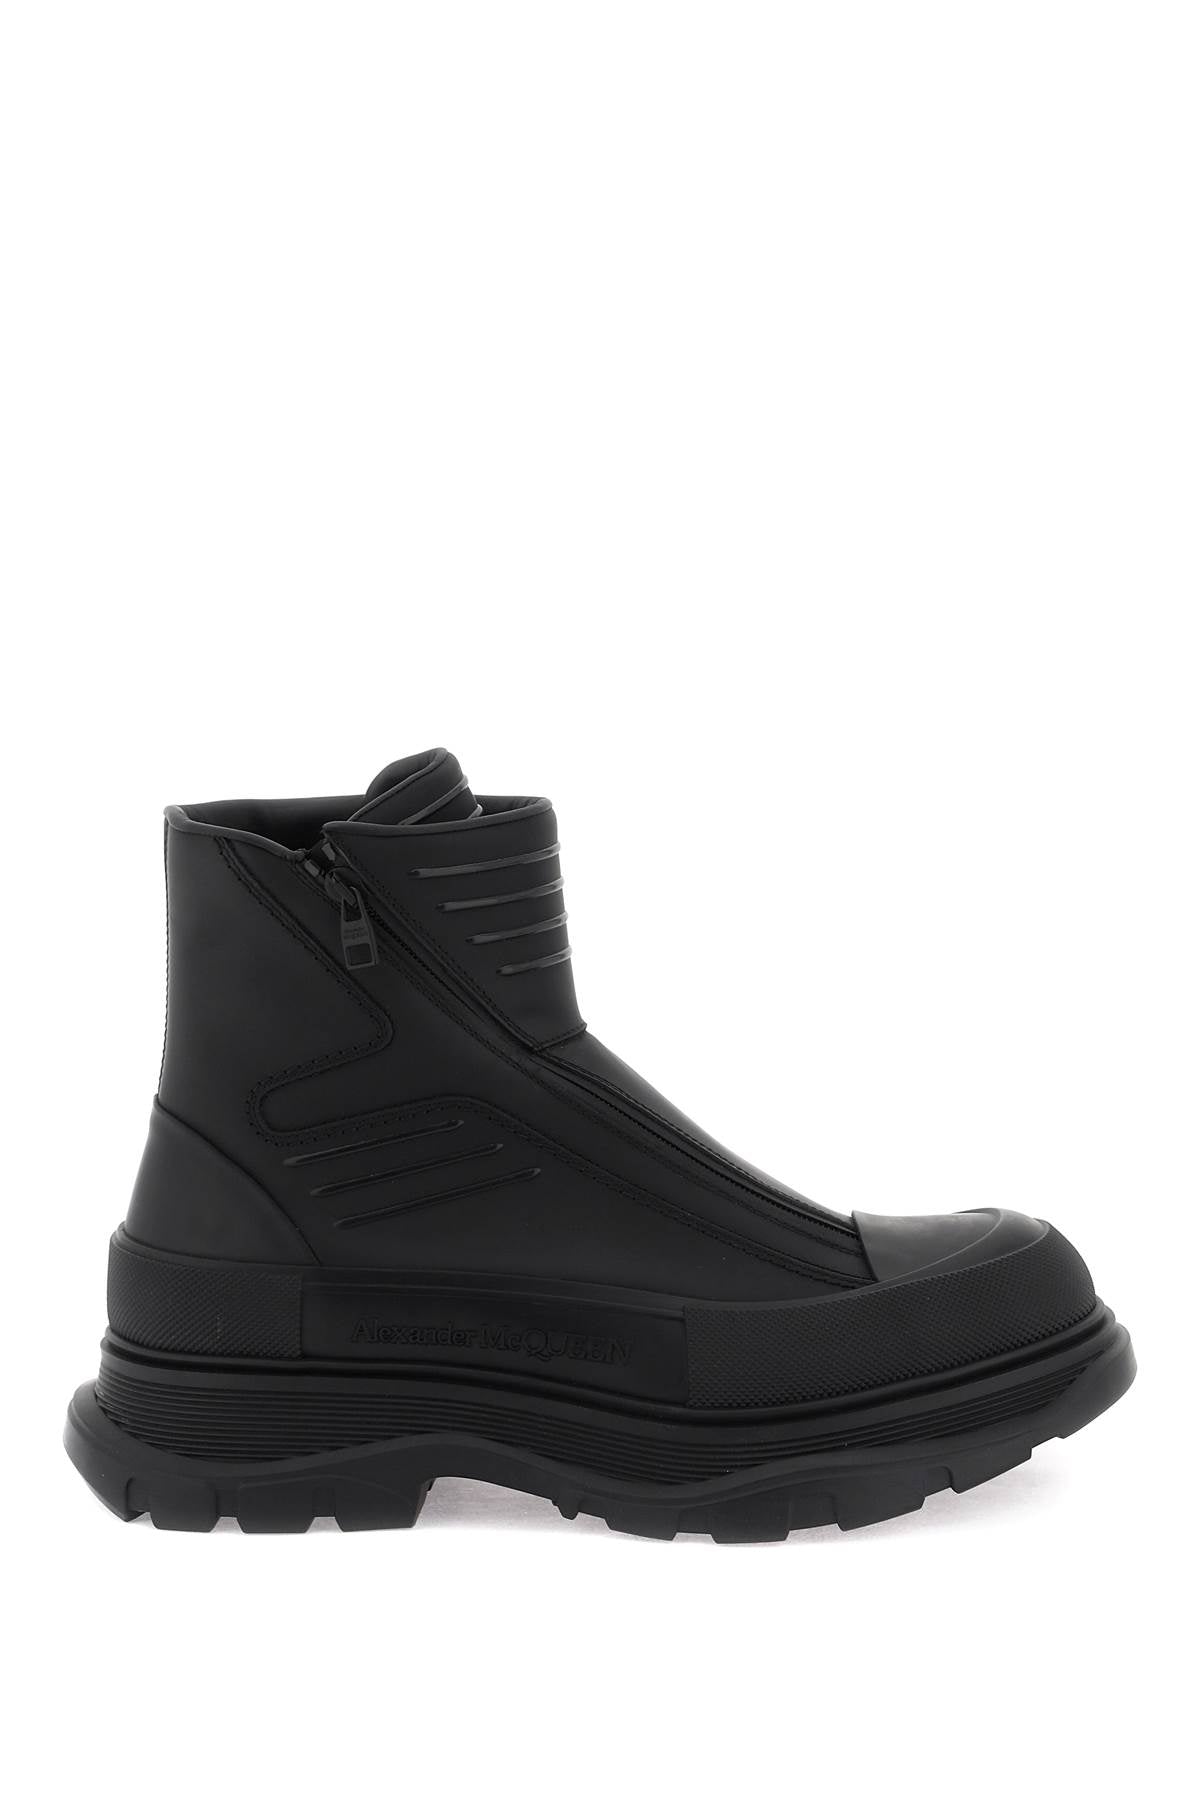 Shop Alexander Mcqueen Sleek Rubberized Ankle Boots For Men In Black